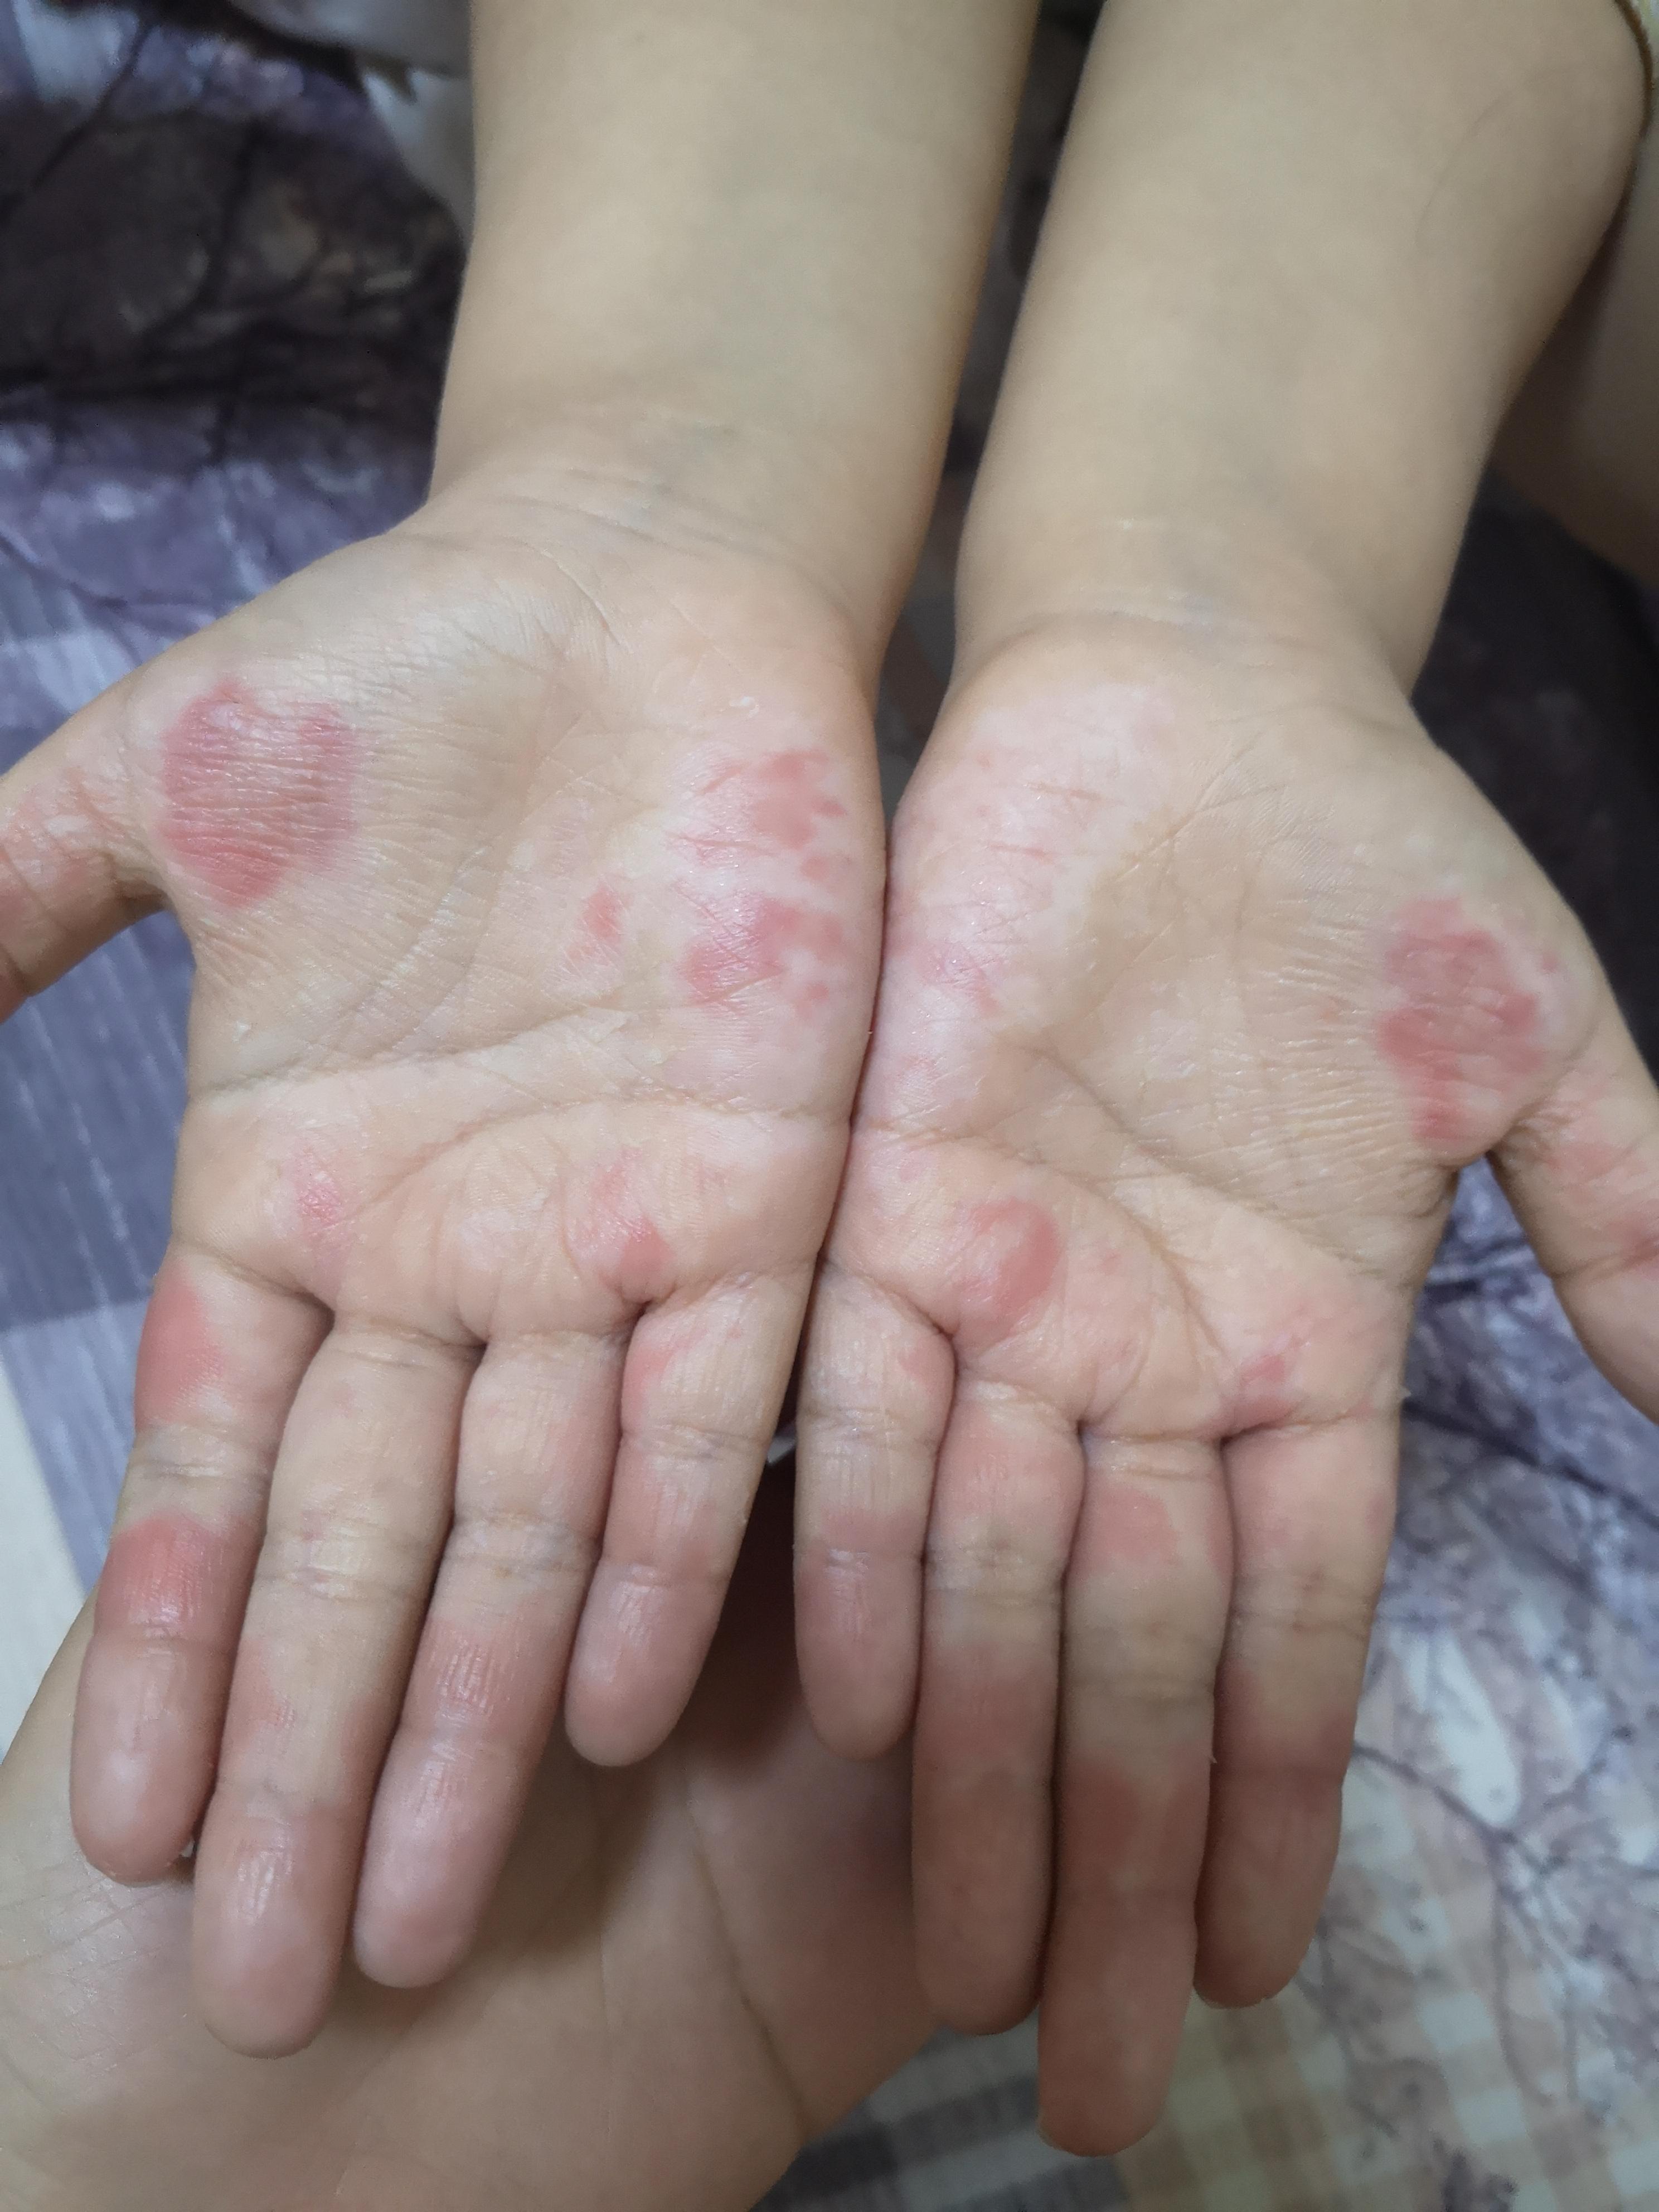 7岁儿童,之前秋冬季手掌也脱皮,但是没这次严重,快一个月了,脱皮越来